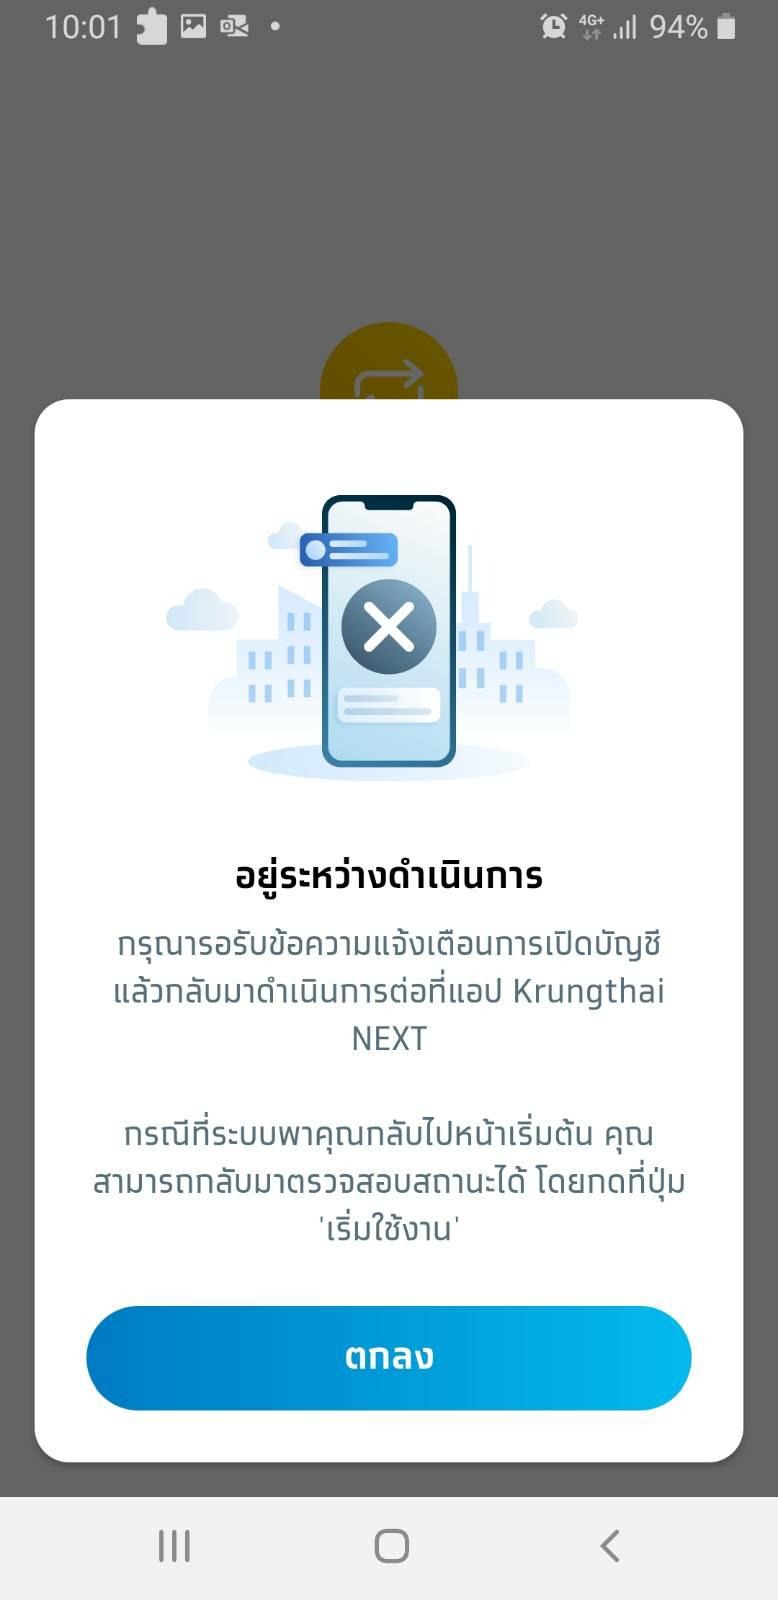 เปิดบัญชีกรุงไทย ออนไลน์ ผ่าน Krungthai Next นานมากแล้ว - Pantip